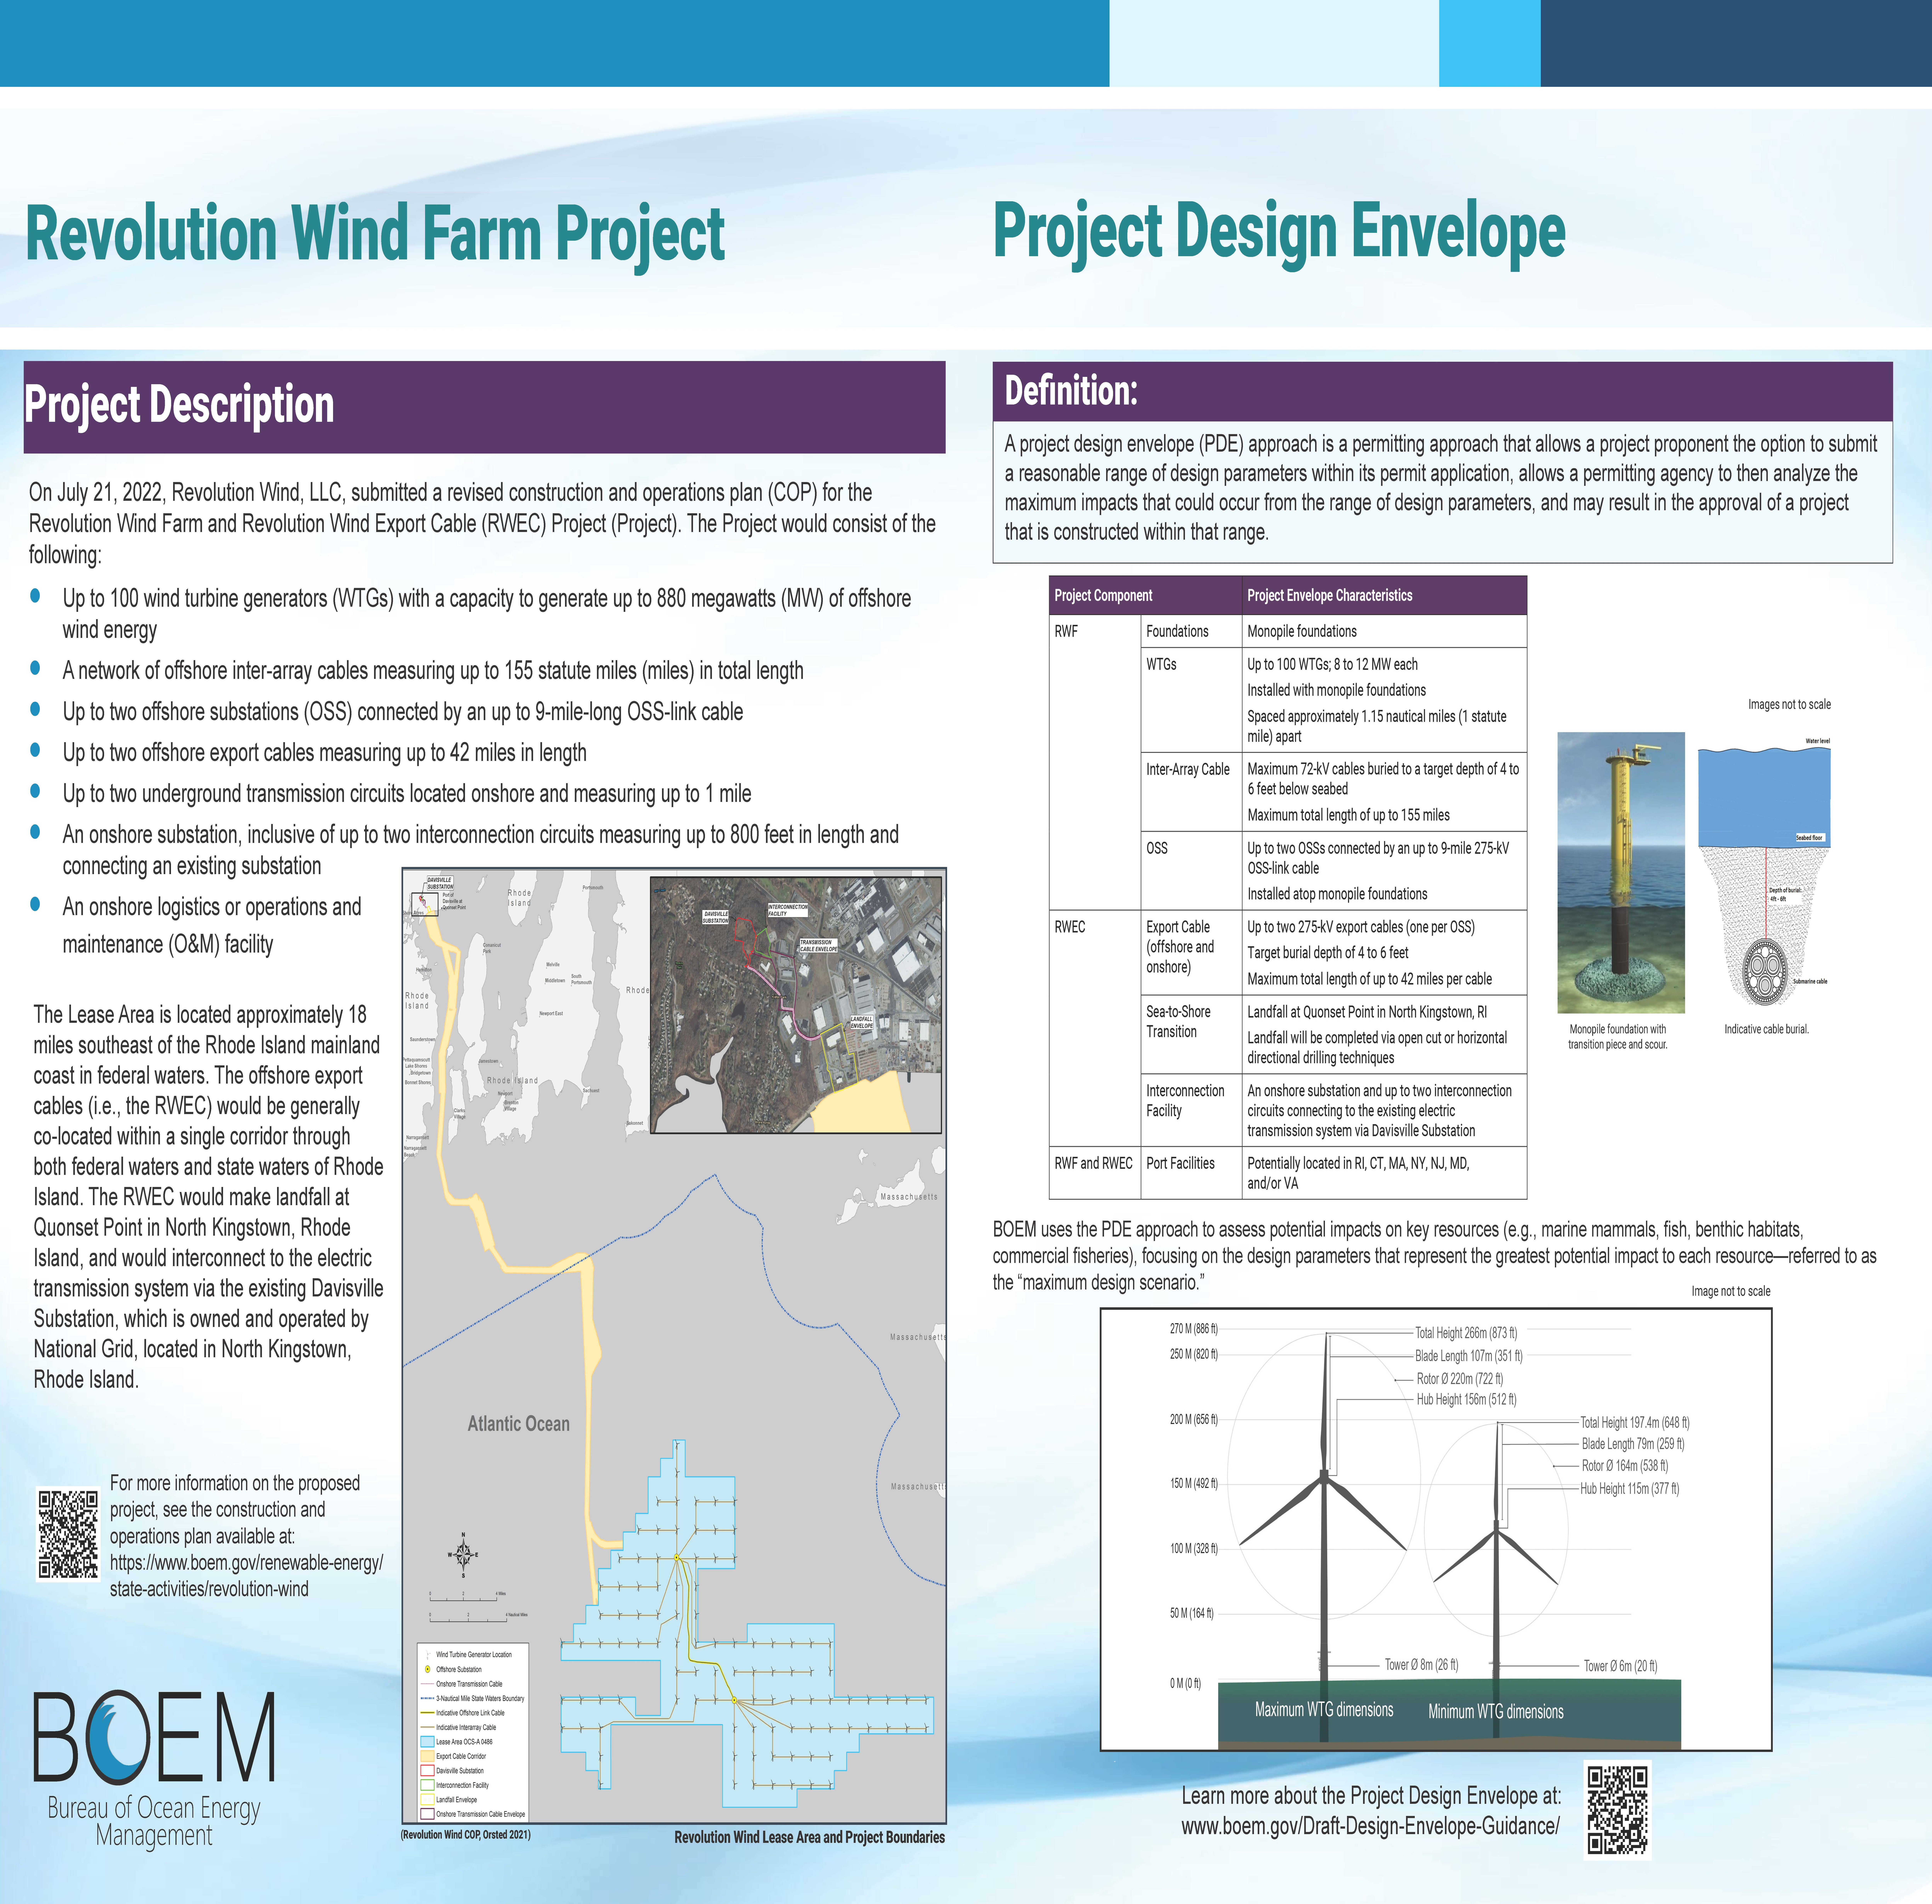 Project Description and Design Envelope